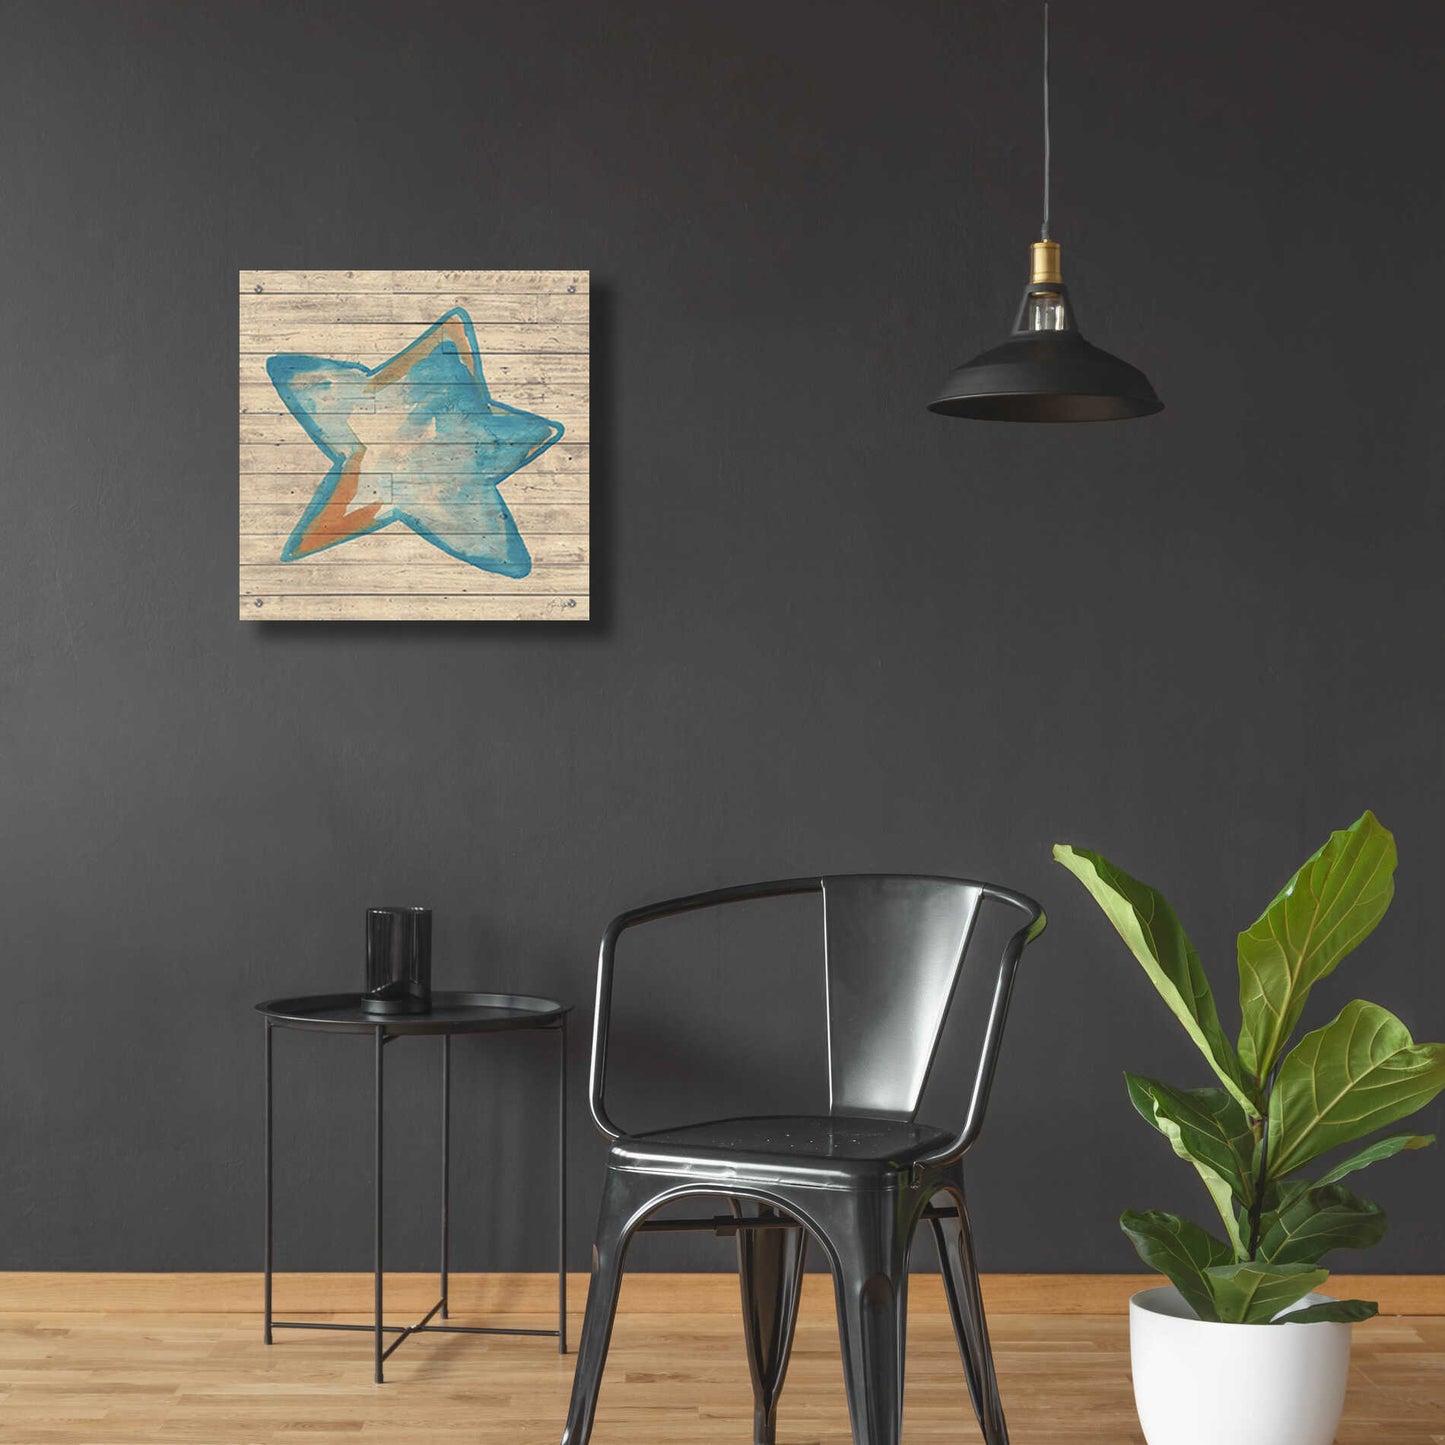 Epic Art 'A Starfish Wish' by Yass Naffas Designs, Acrylic Glass Wall Art,24x24